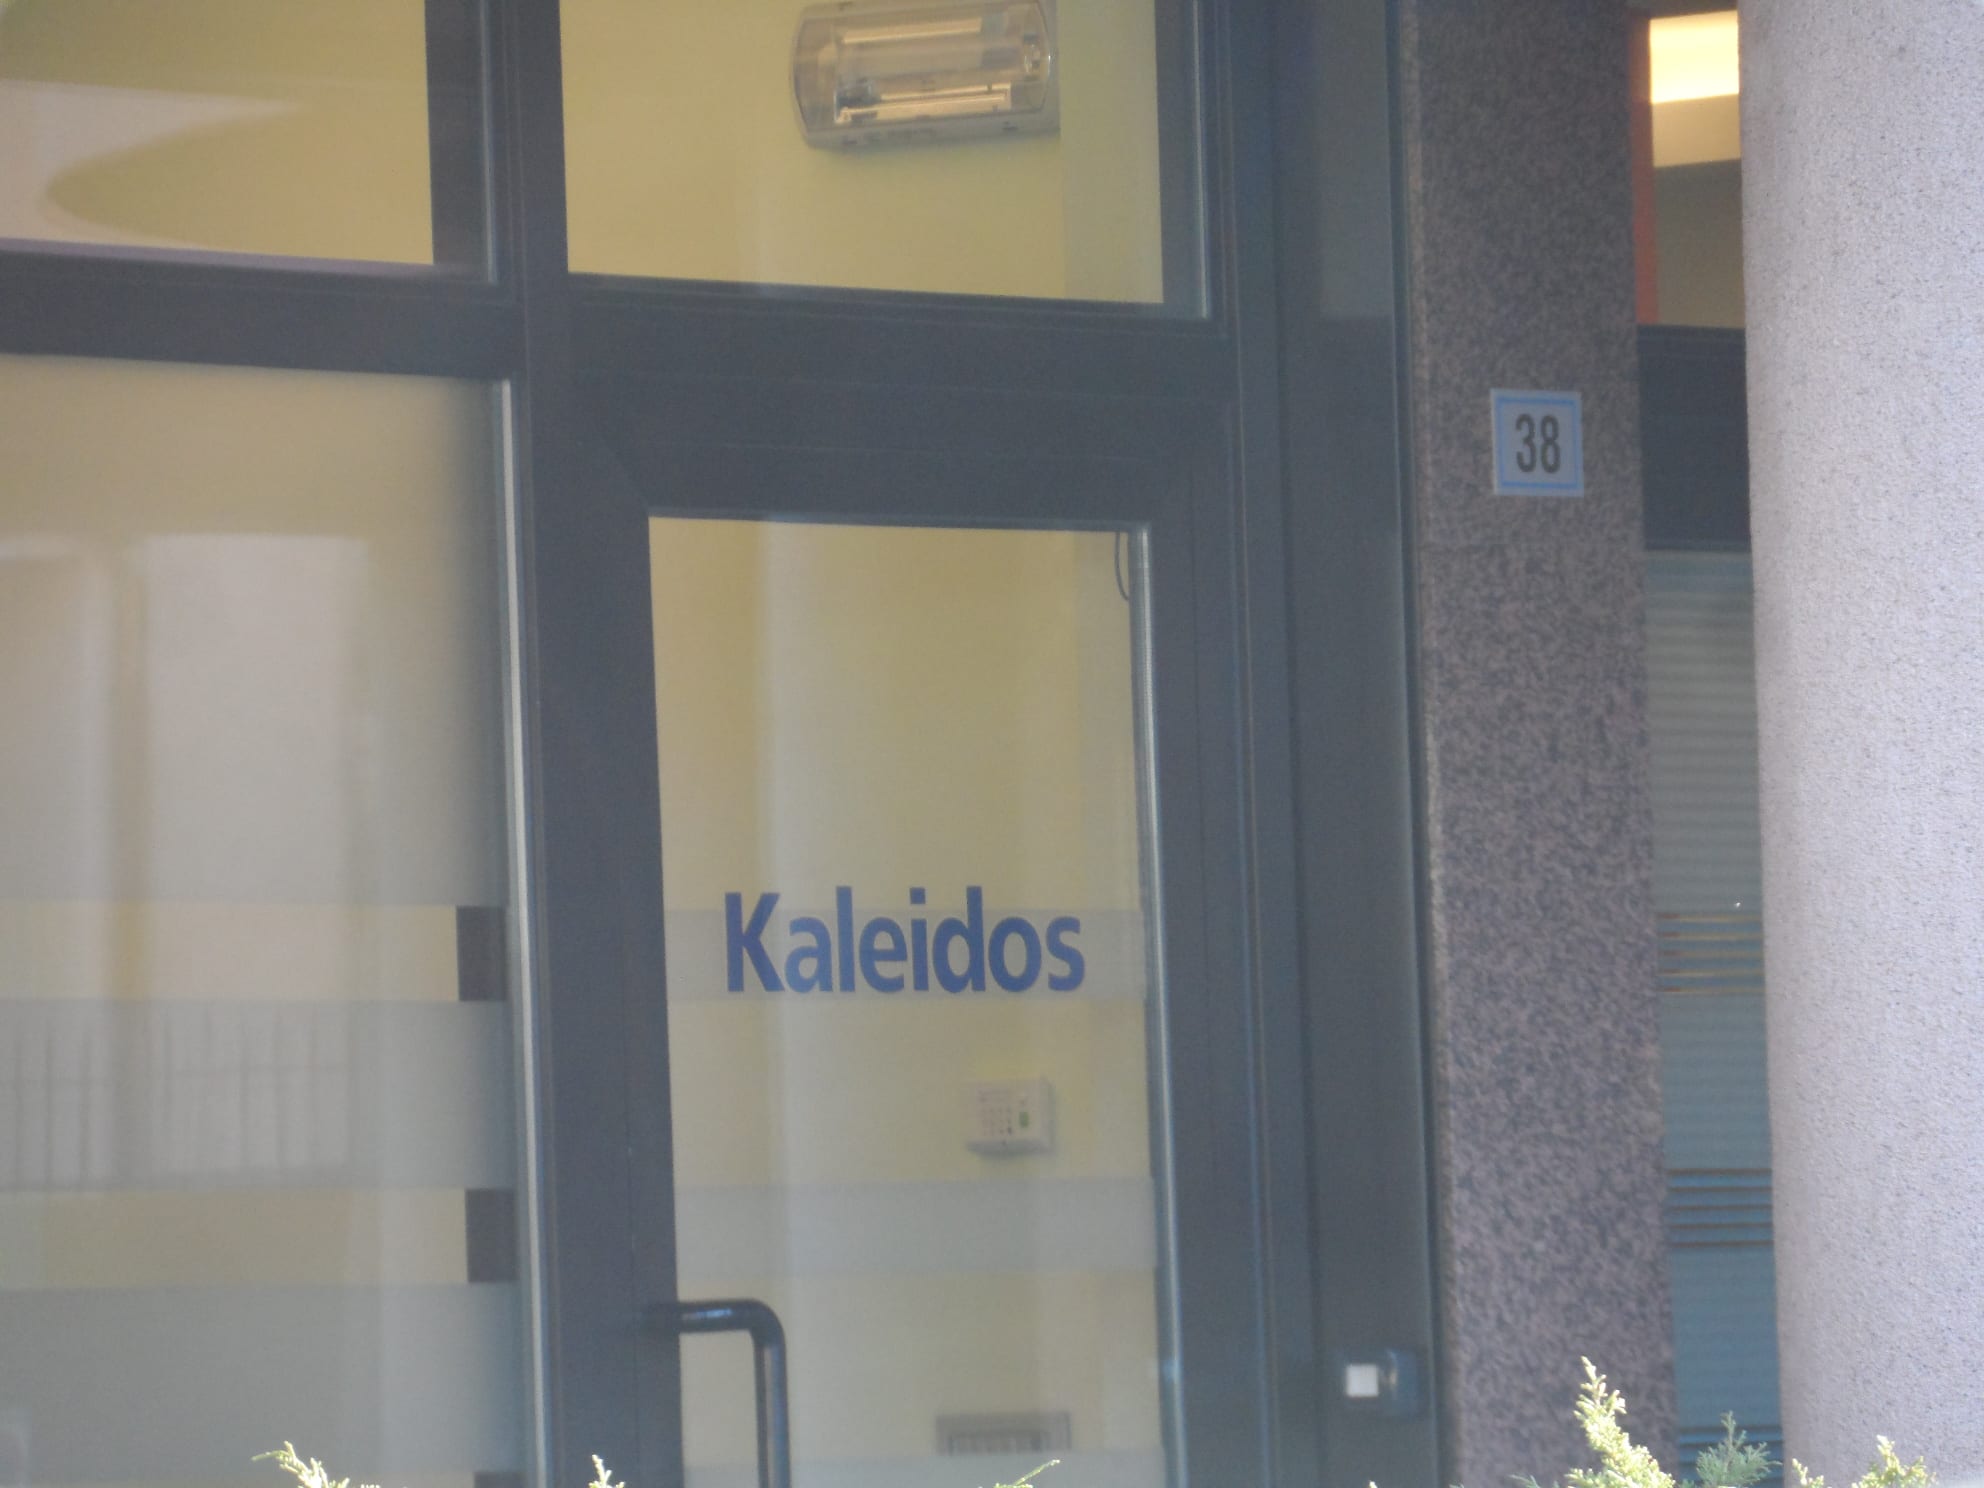 Appalti: arresti domiciliari per gli indagati della Kaleidos